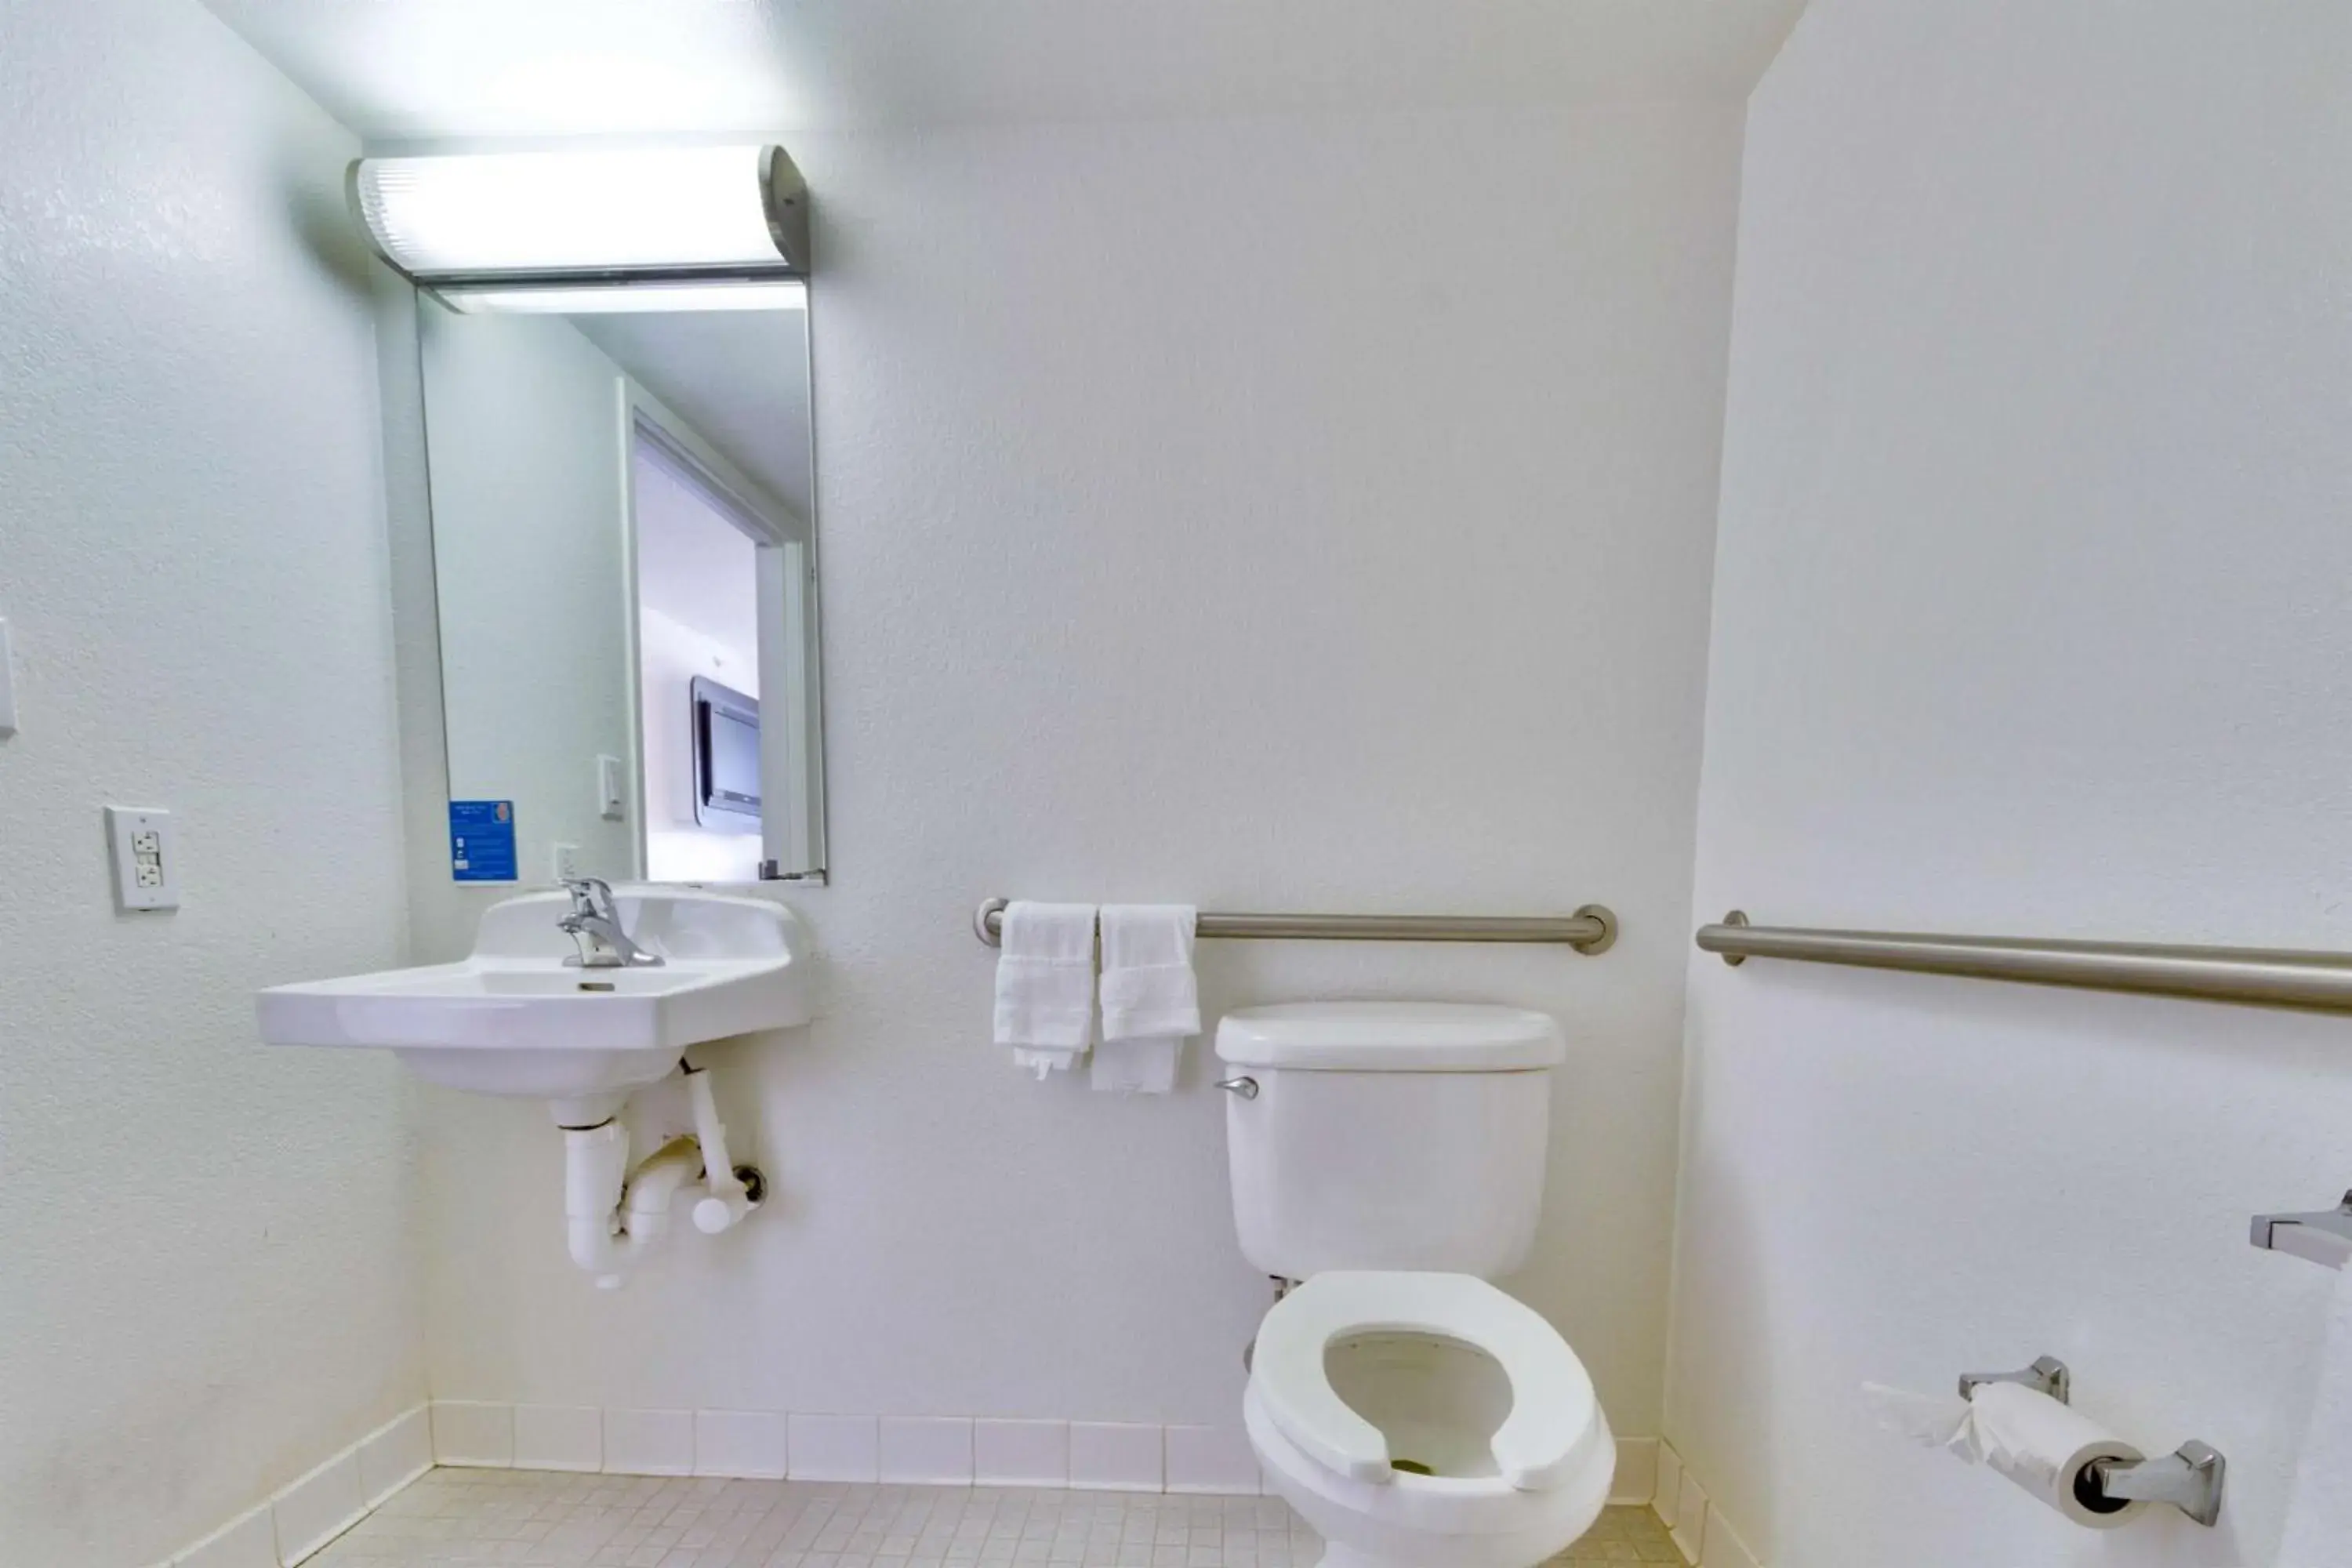 Toilet, Bathroom in Motel 6 Lewisville, TX - Dallas